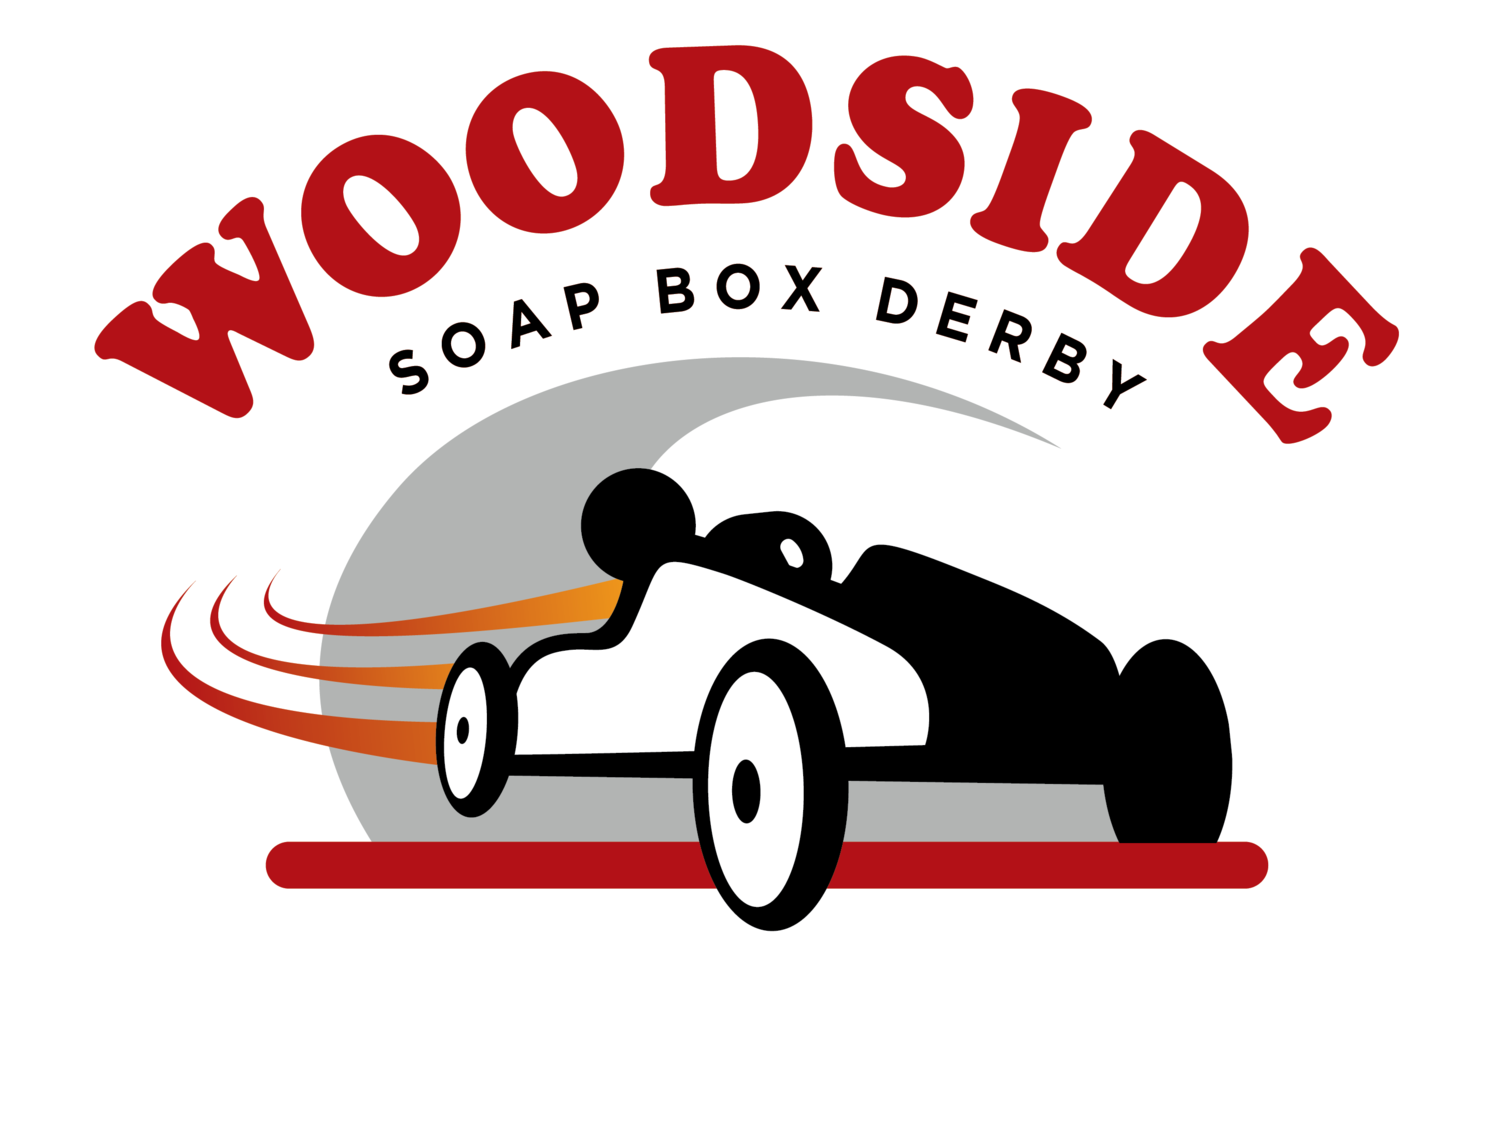 Woodside Soapbox Derby